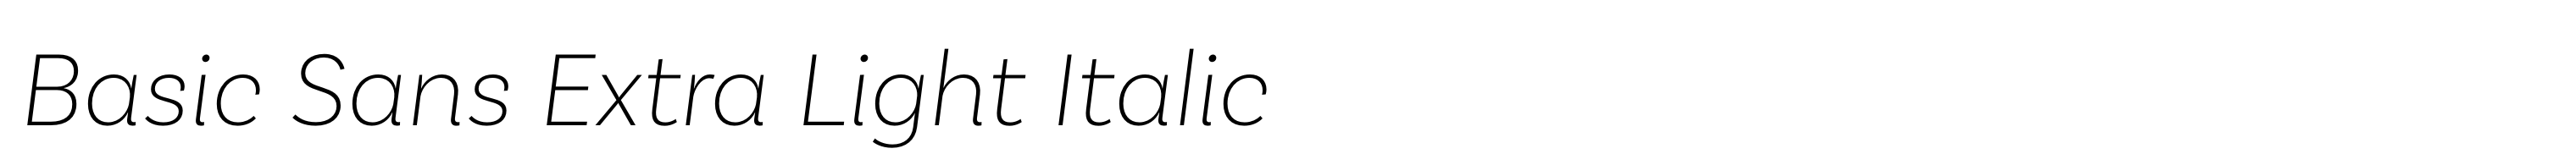 Basic Sans Extra Light Italic